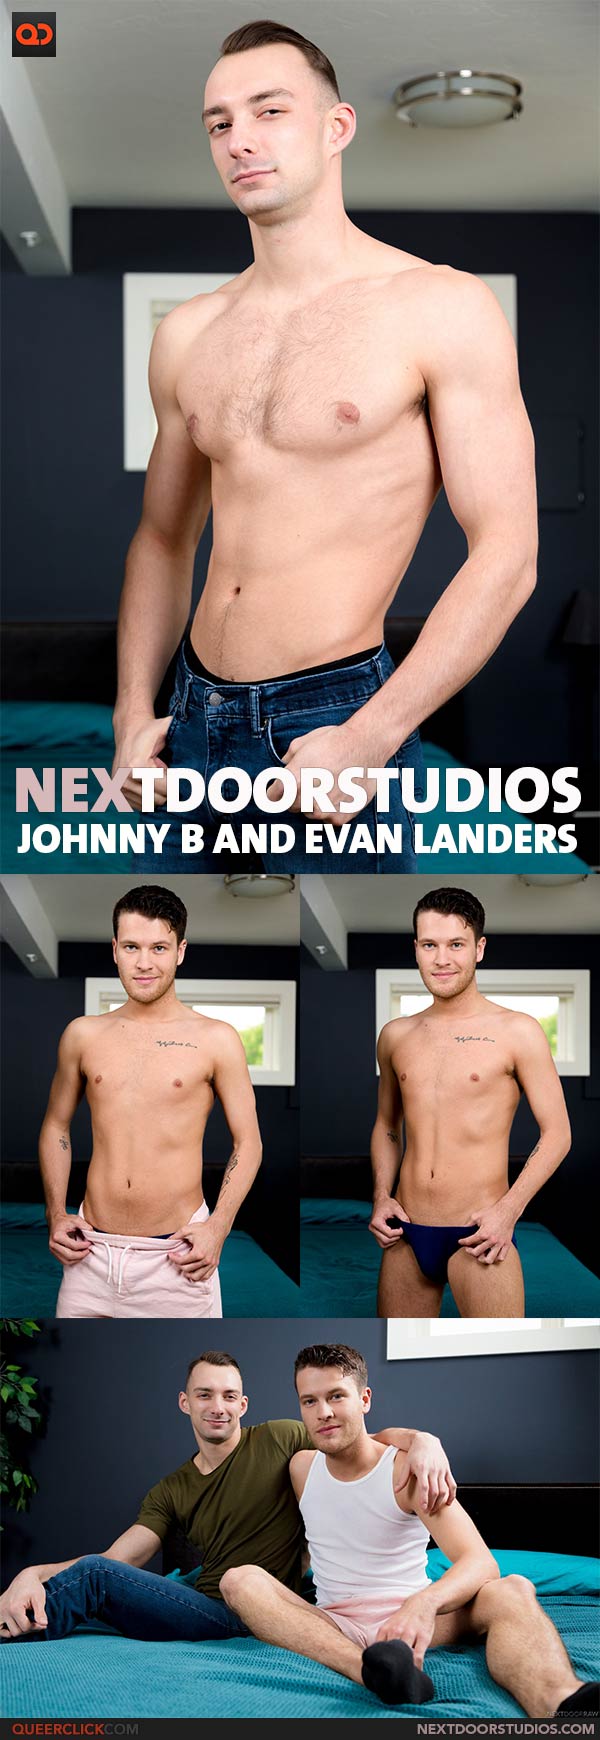 Next Door Studios:  Johnny B and Evan Landers